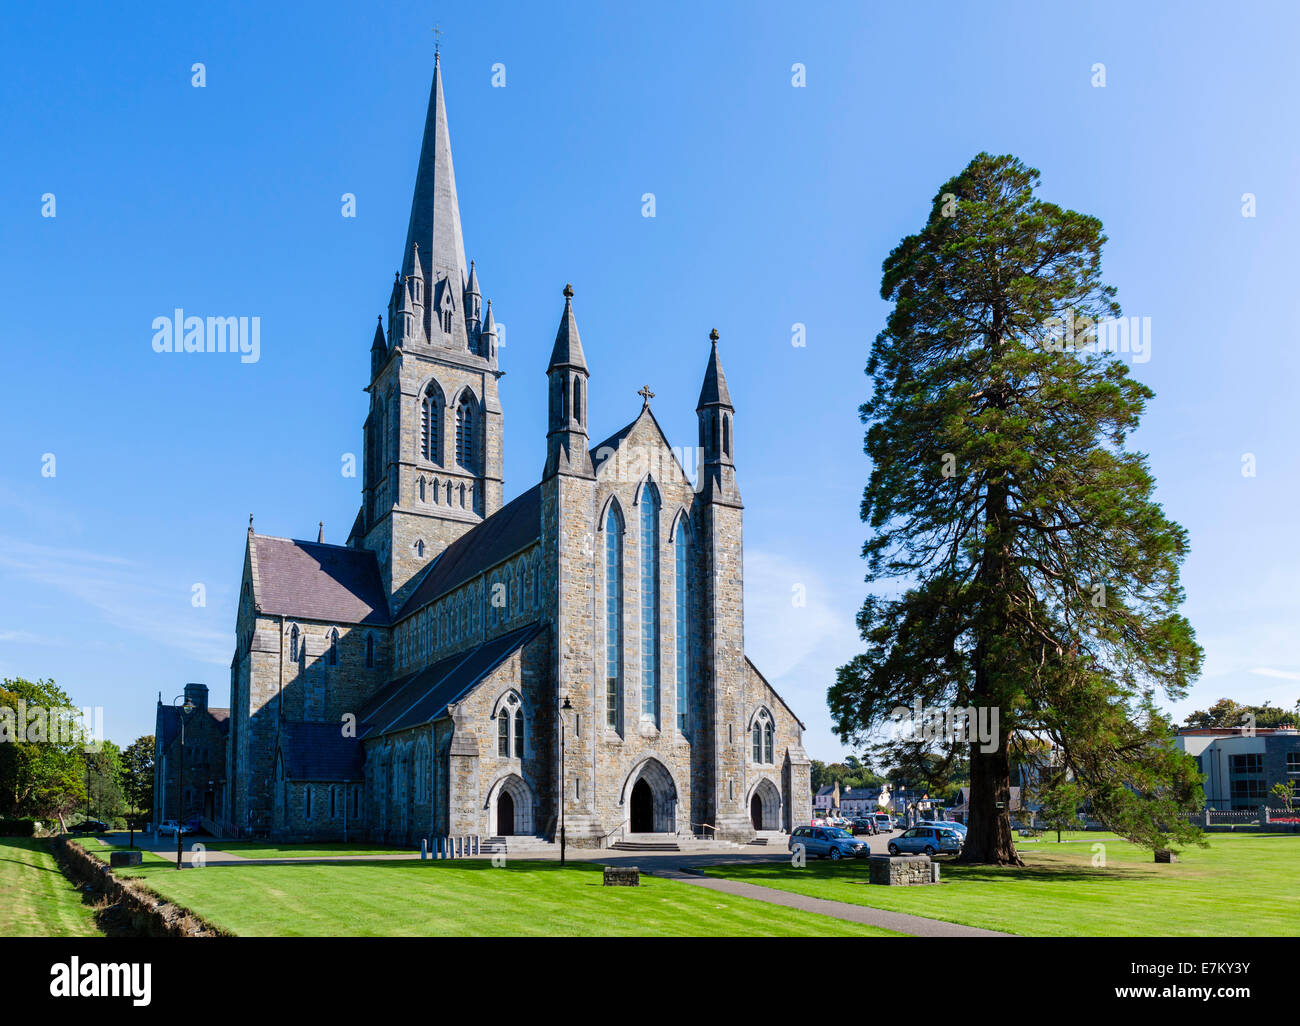 St. Mary's Cathedral, Killarney, County Kerry, Republic of Ireland Stock Photo